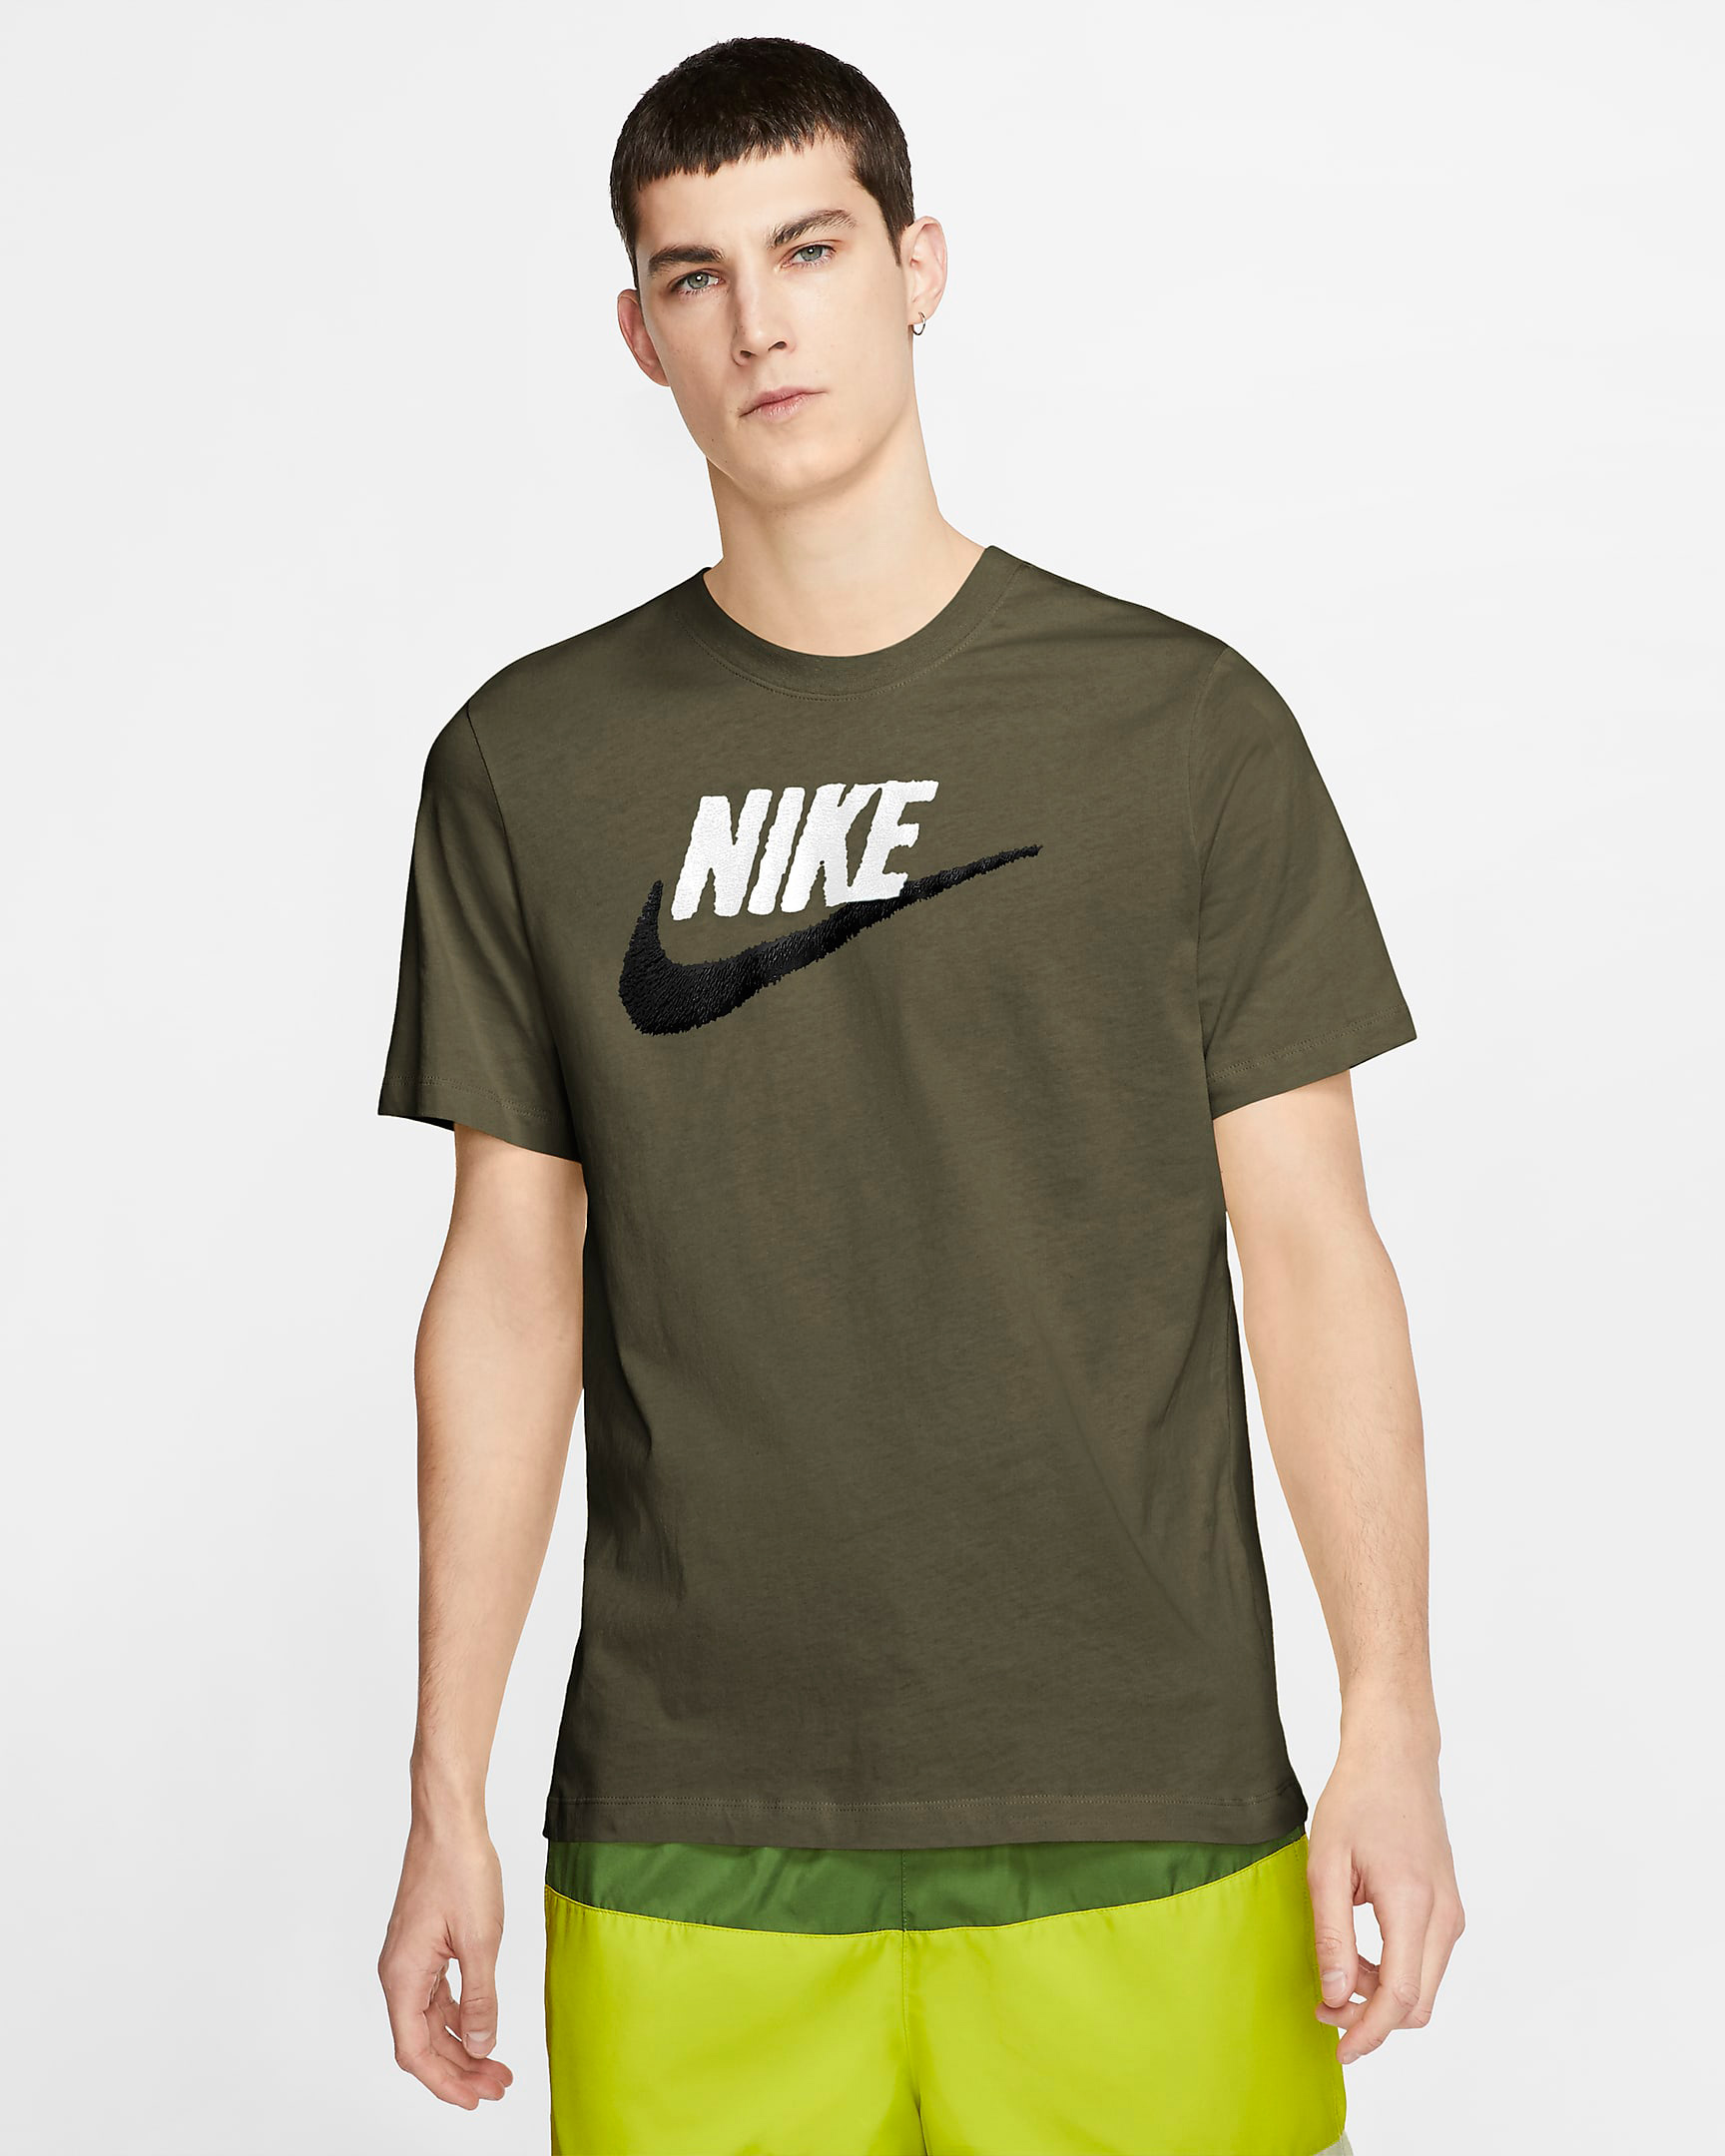 nike-rough-green-t-shirt